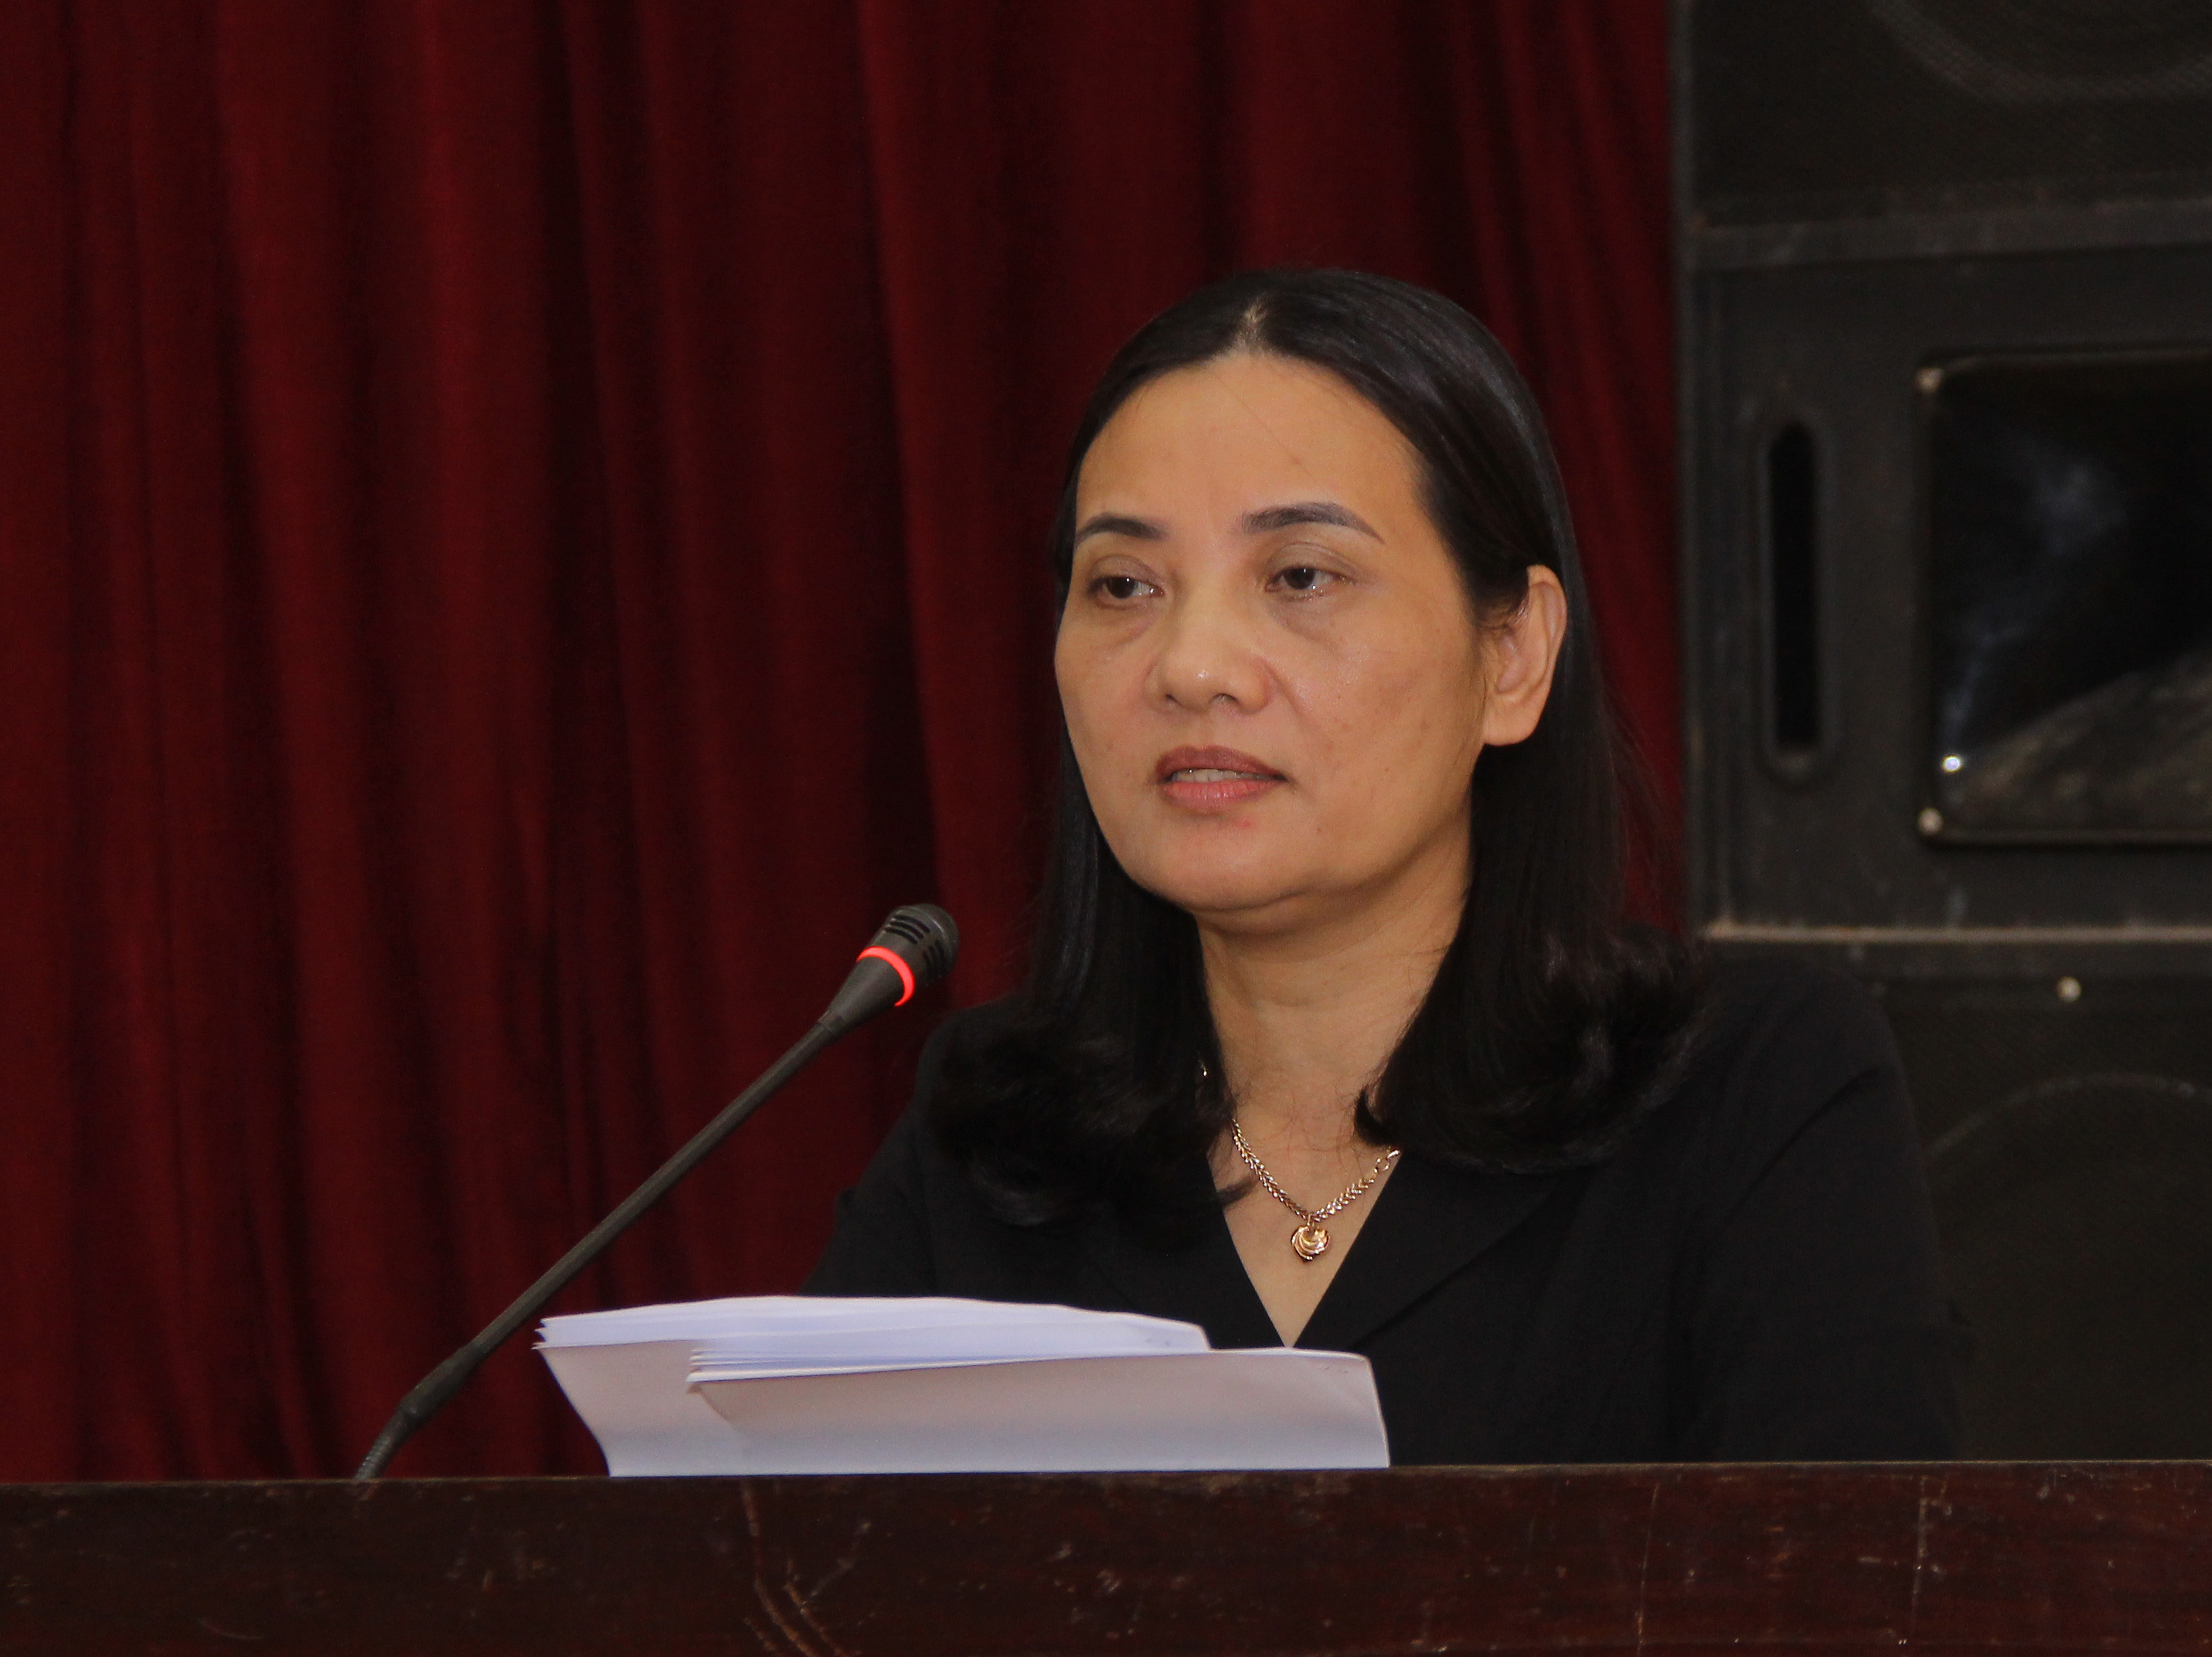 Phó Chủ tịch HĐND tỉnh Cao Thị Hiền điều hành phiên giải trình. Ảnh: Mai Hoa